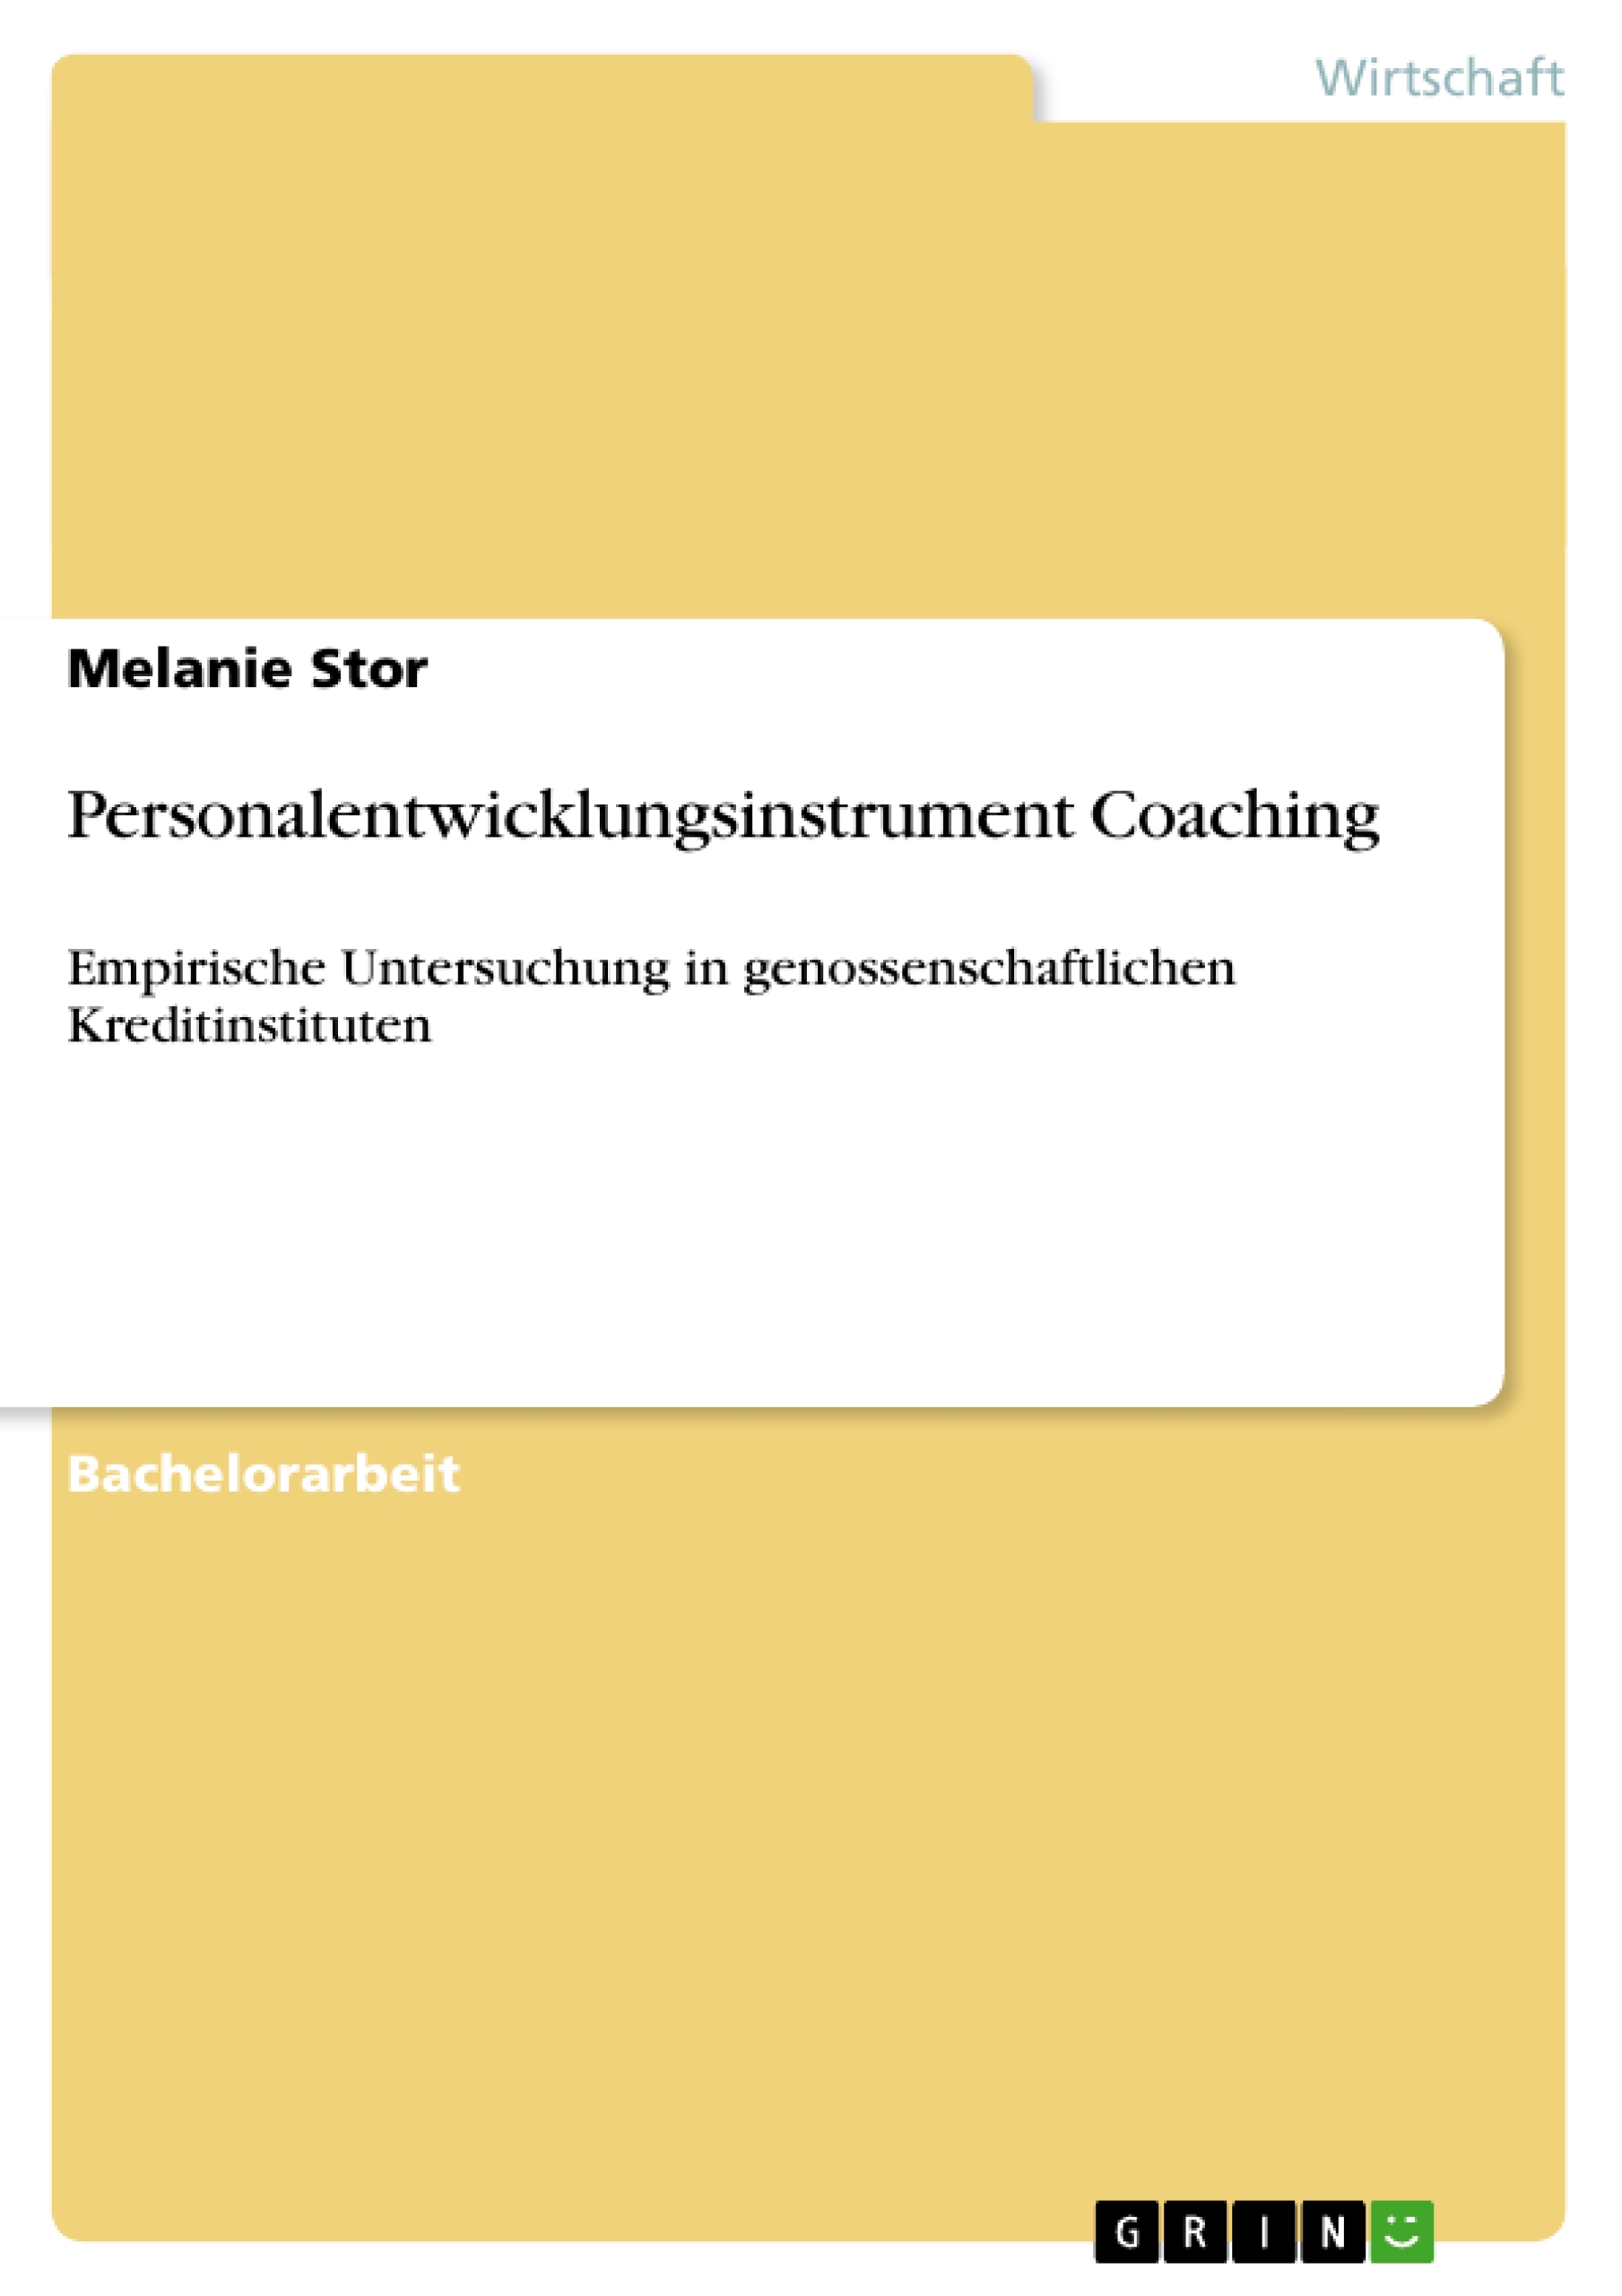 Personalentwicklungsinstrument Coaching - Stor, Melanie